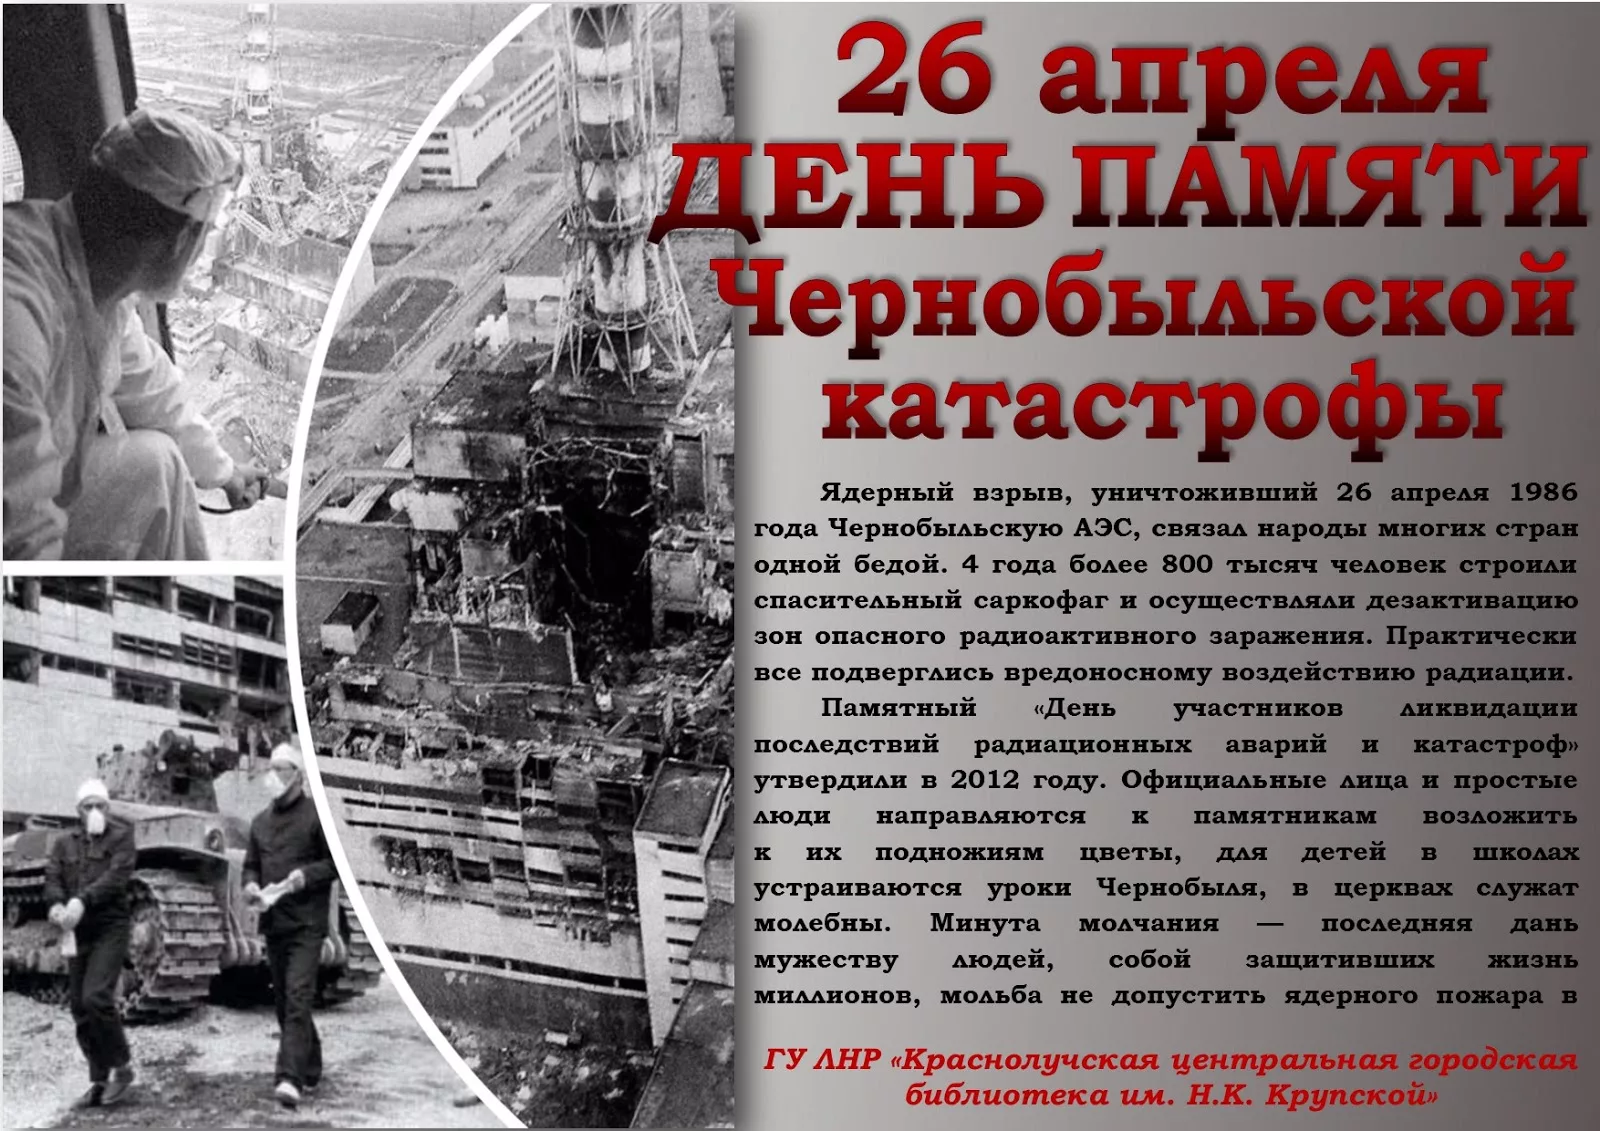 26 апреля чернобыль. ЧАЭС 1986 26 апреля. Чернобыльская катастрофа - 26 апреля 1986 г.. 26 Апреля день памяти Чернобыльской трагедии.